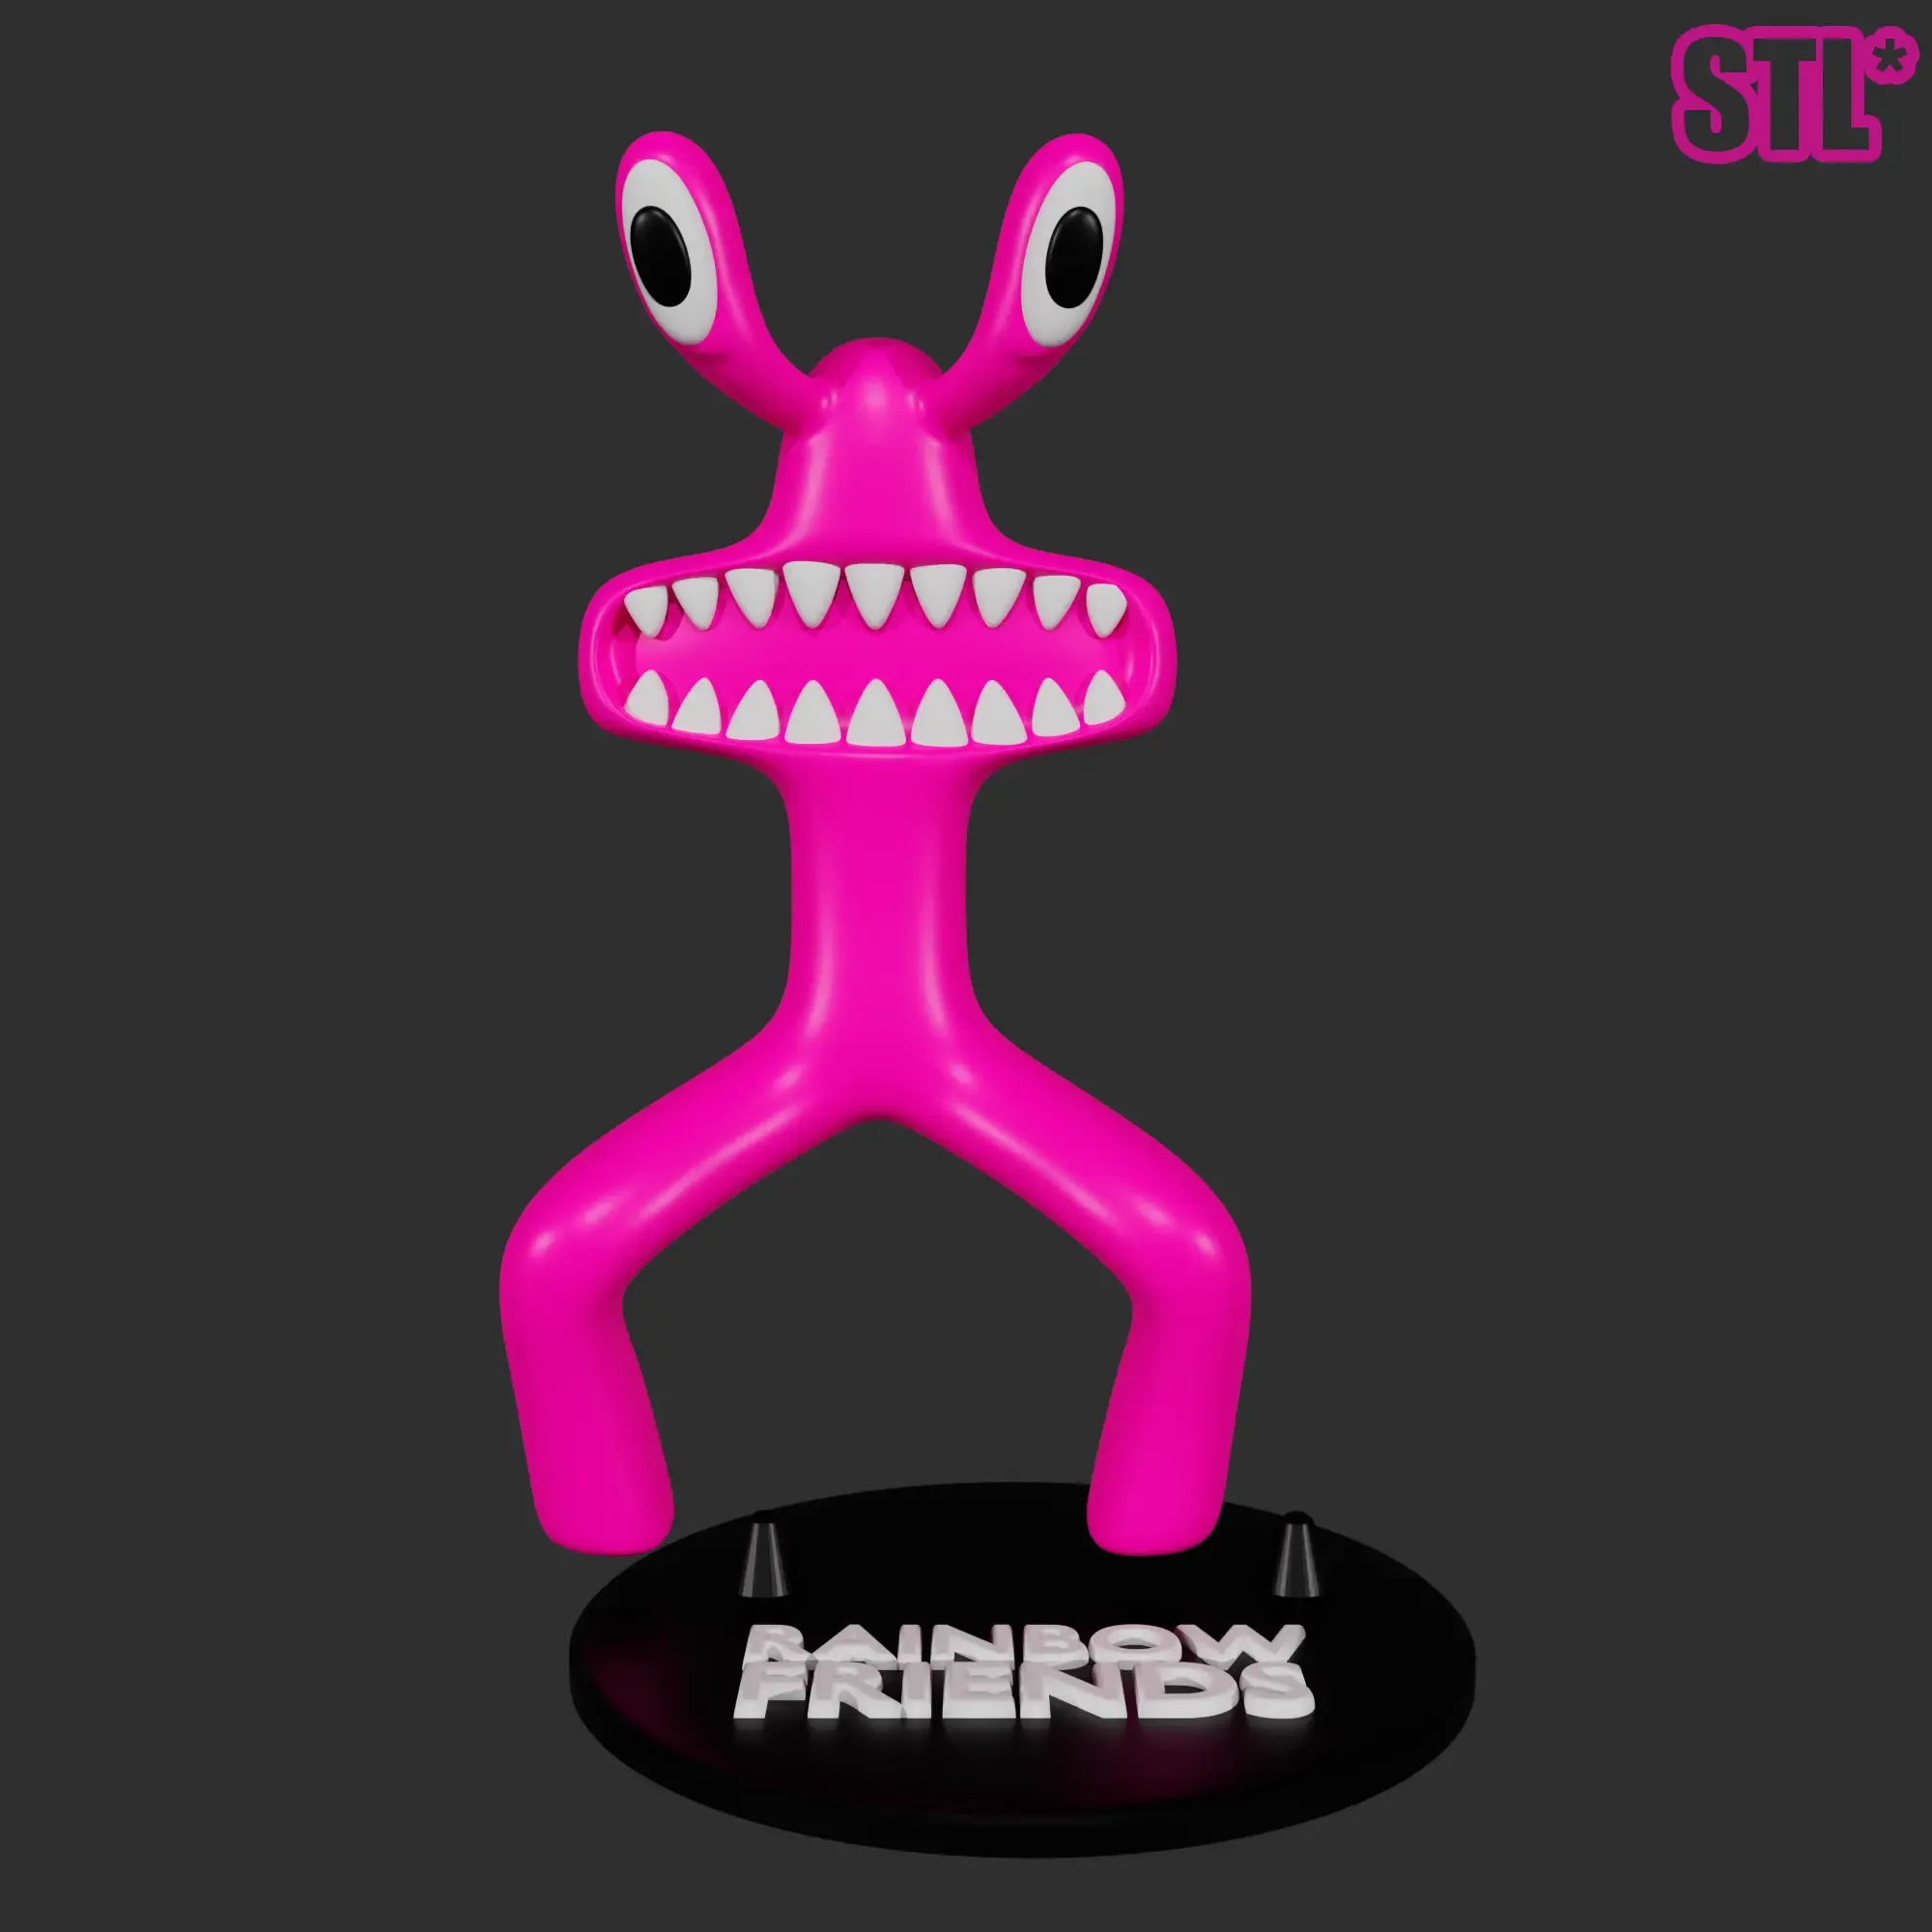 PINK FROM RAINBOW FRIENDS ROBLOX GOOEY | 3D FAN ART